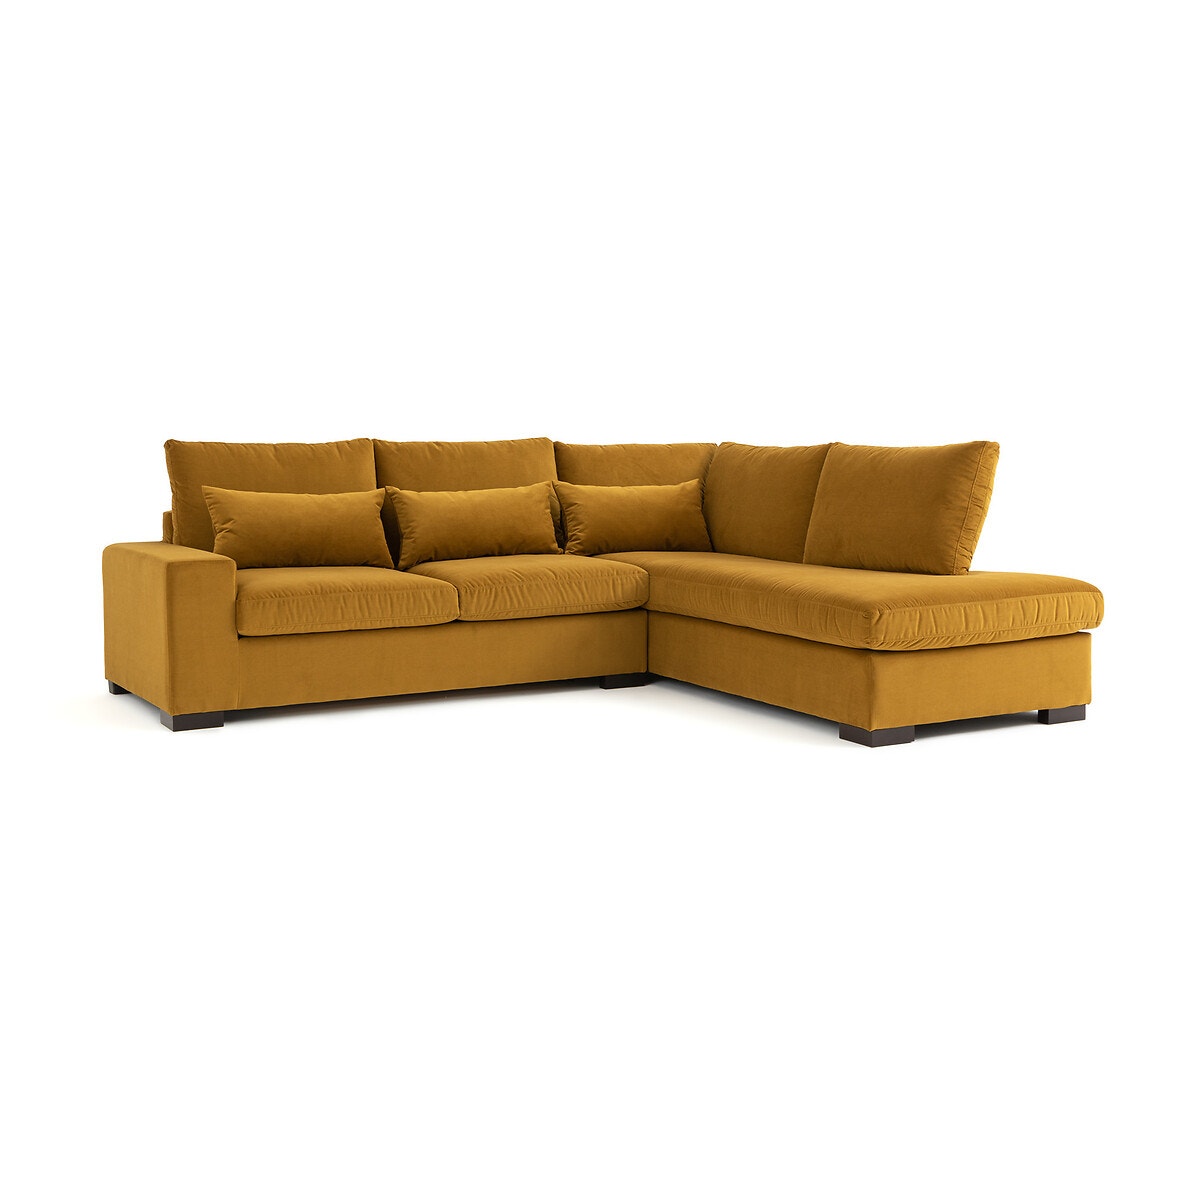 Γωνιακός καναπές από βελούδο με τεχνολογία Bultex, Odessa